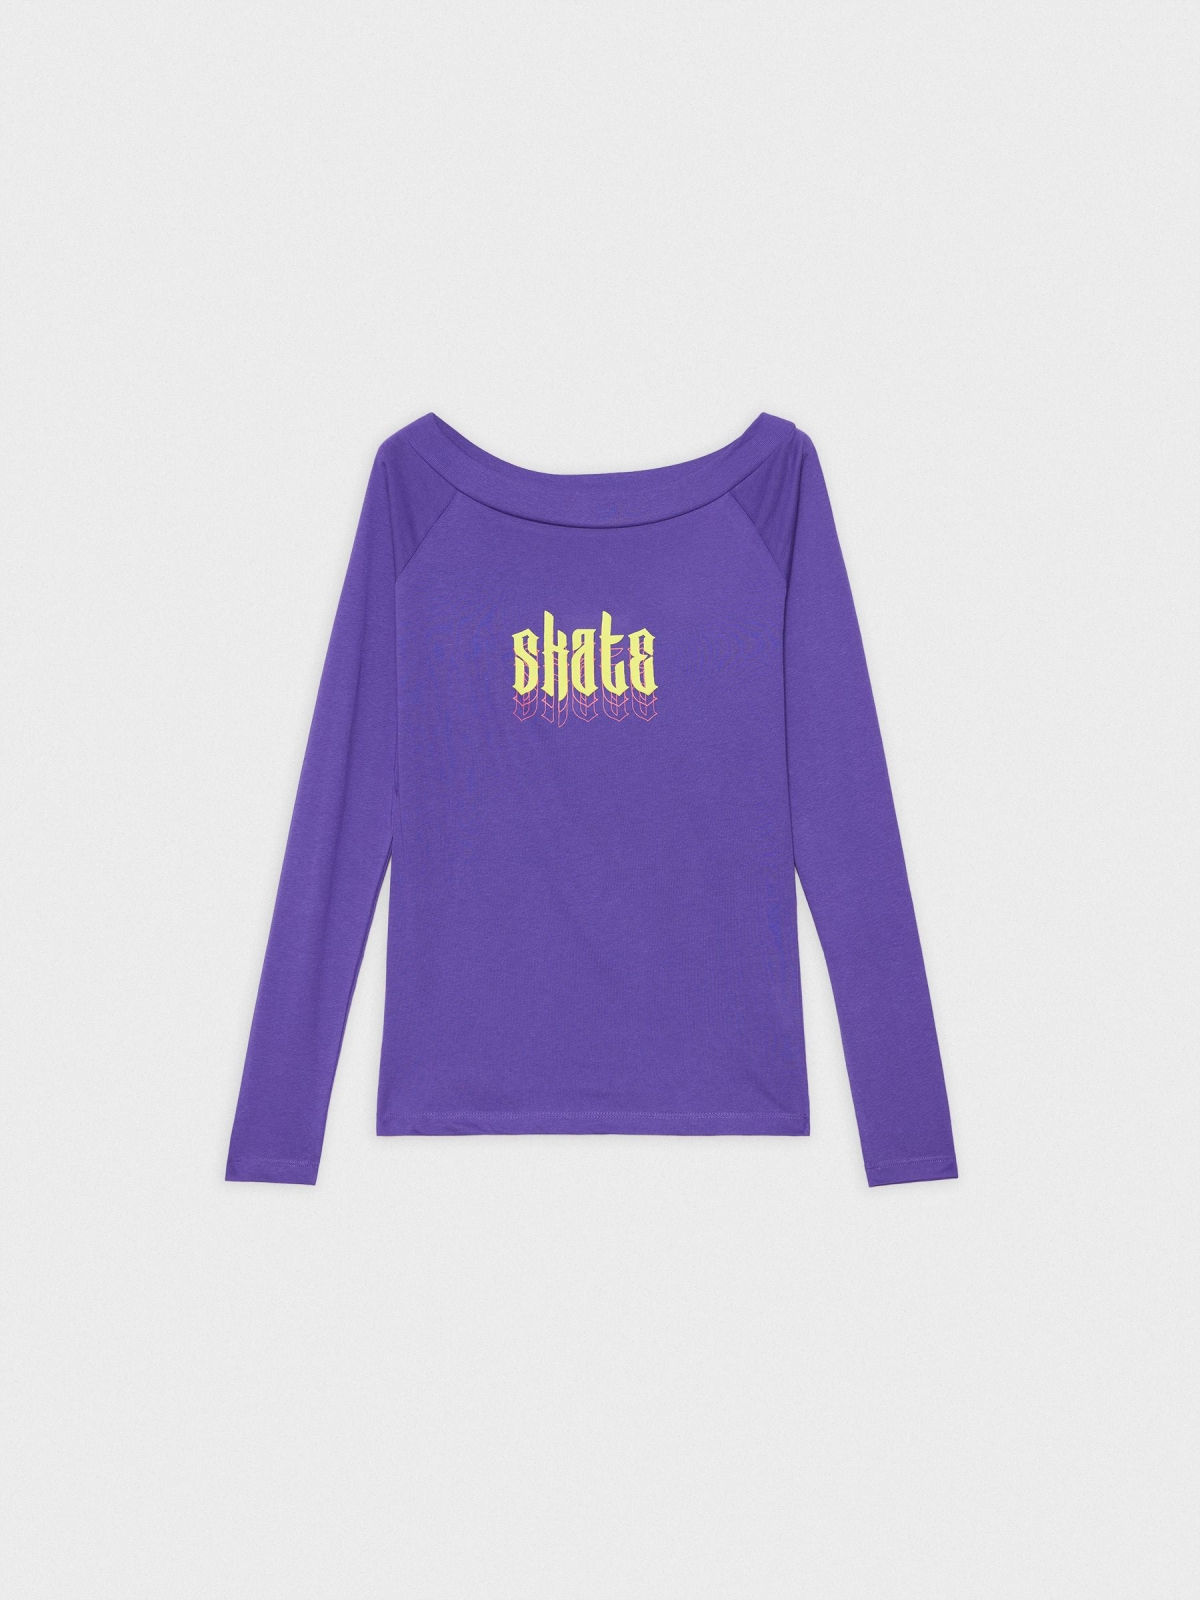  T-shirt de barco Skate violeta